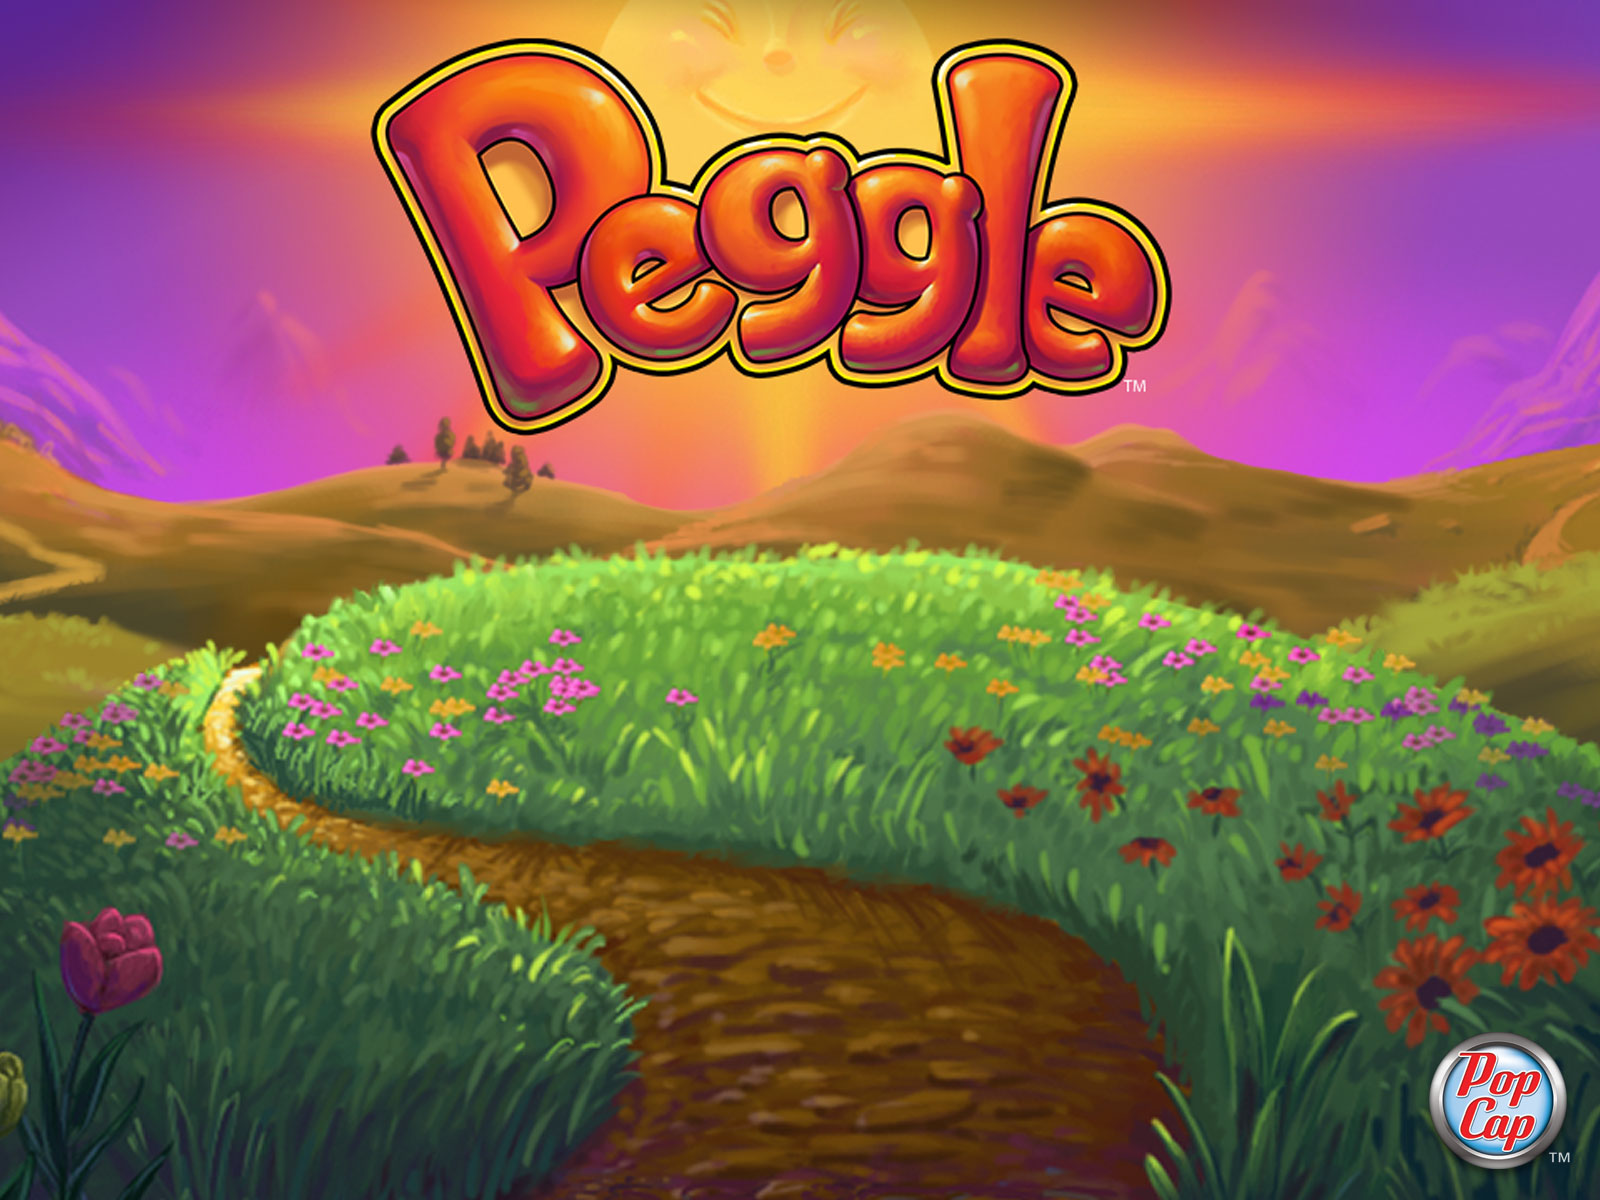 Na Originu si právě teď můžete zdarma stáhnout hru Peggle